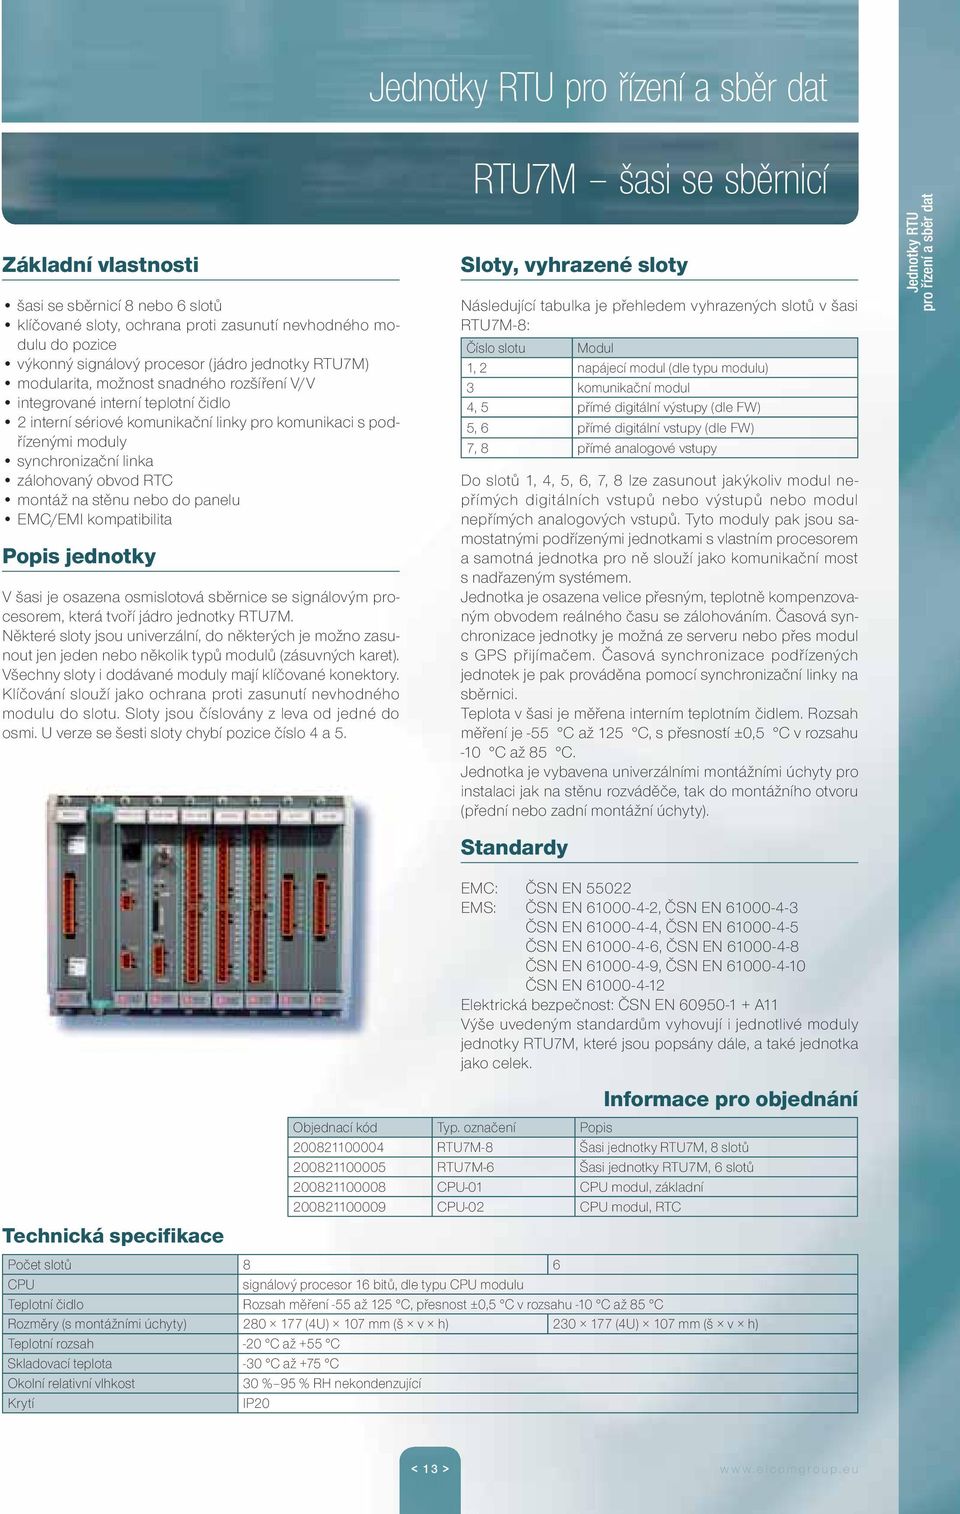 kompatibilita Popis jednotky V šasi je osazena osmislotová sběrnice se signálovým procesorem, která tvoří jádro jednotky RTU7M.